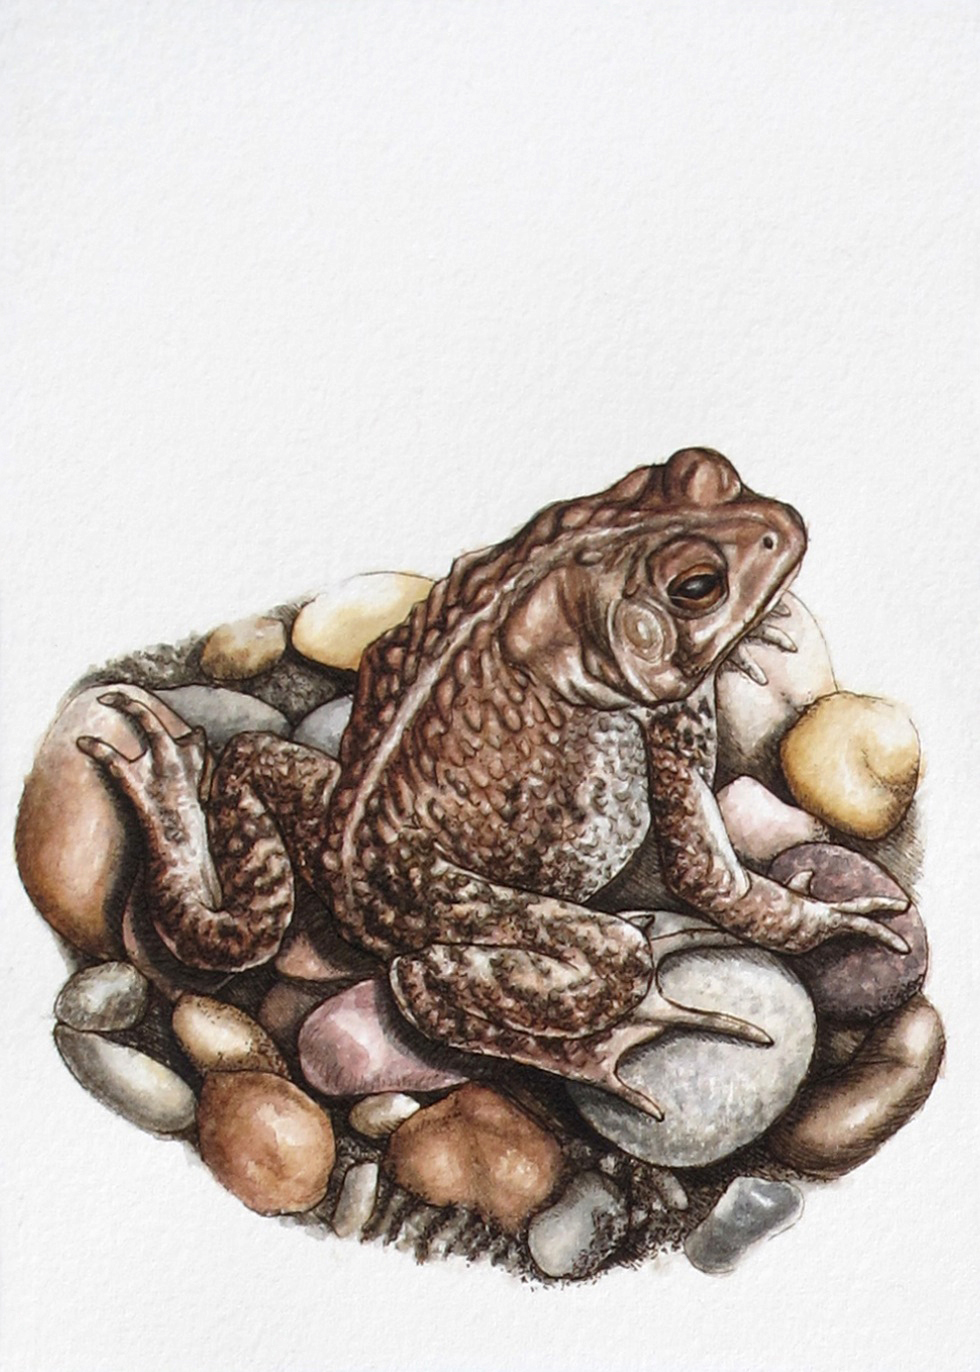 toad frog Amphibian river rock river stones  pebbles stones